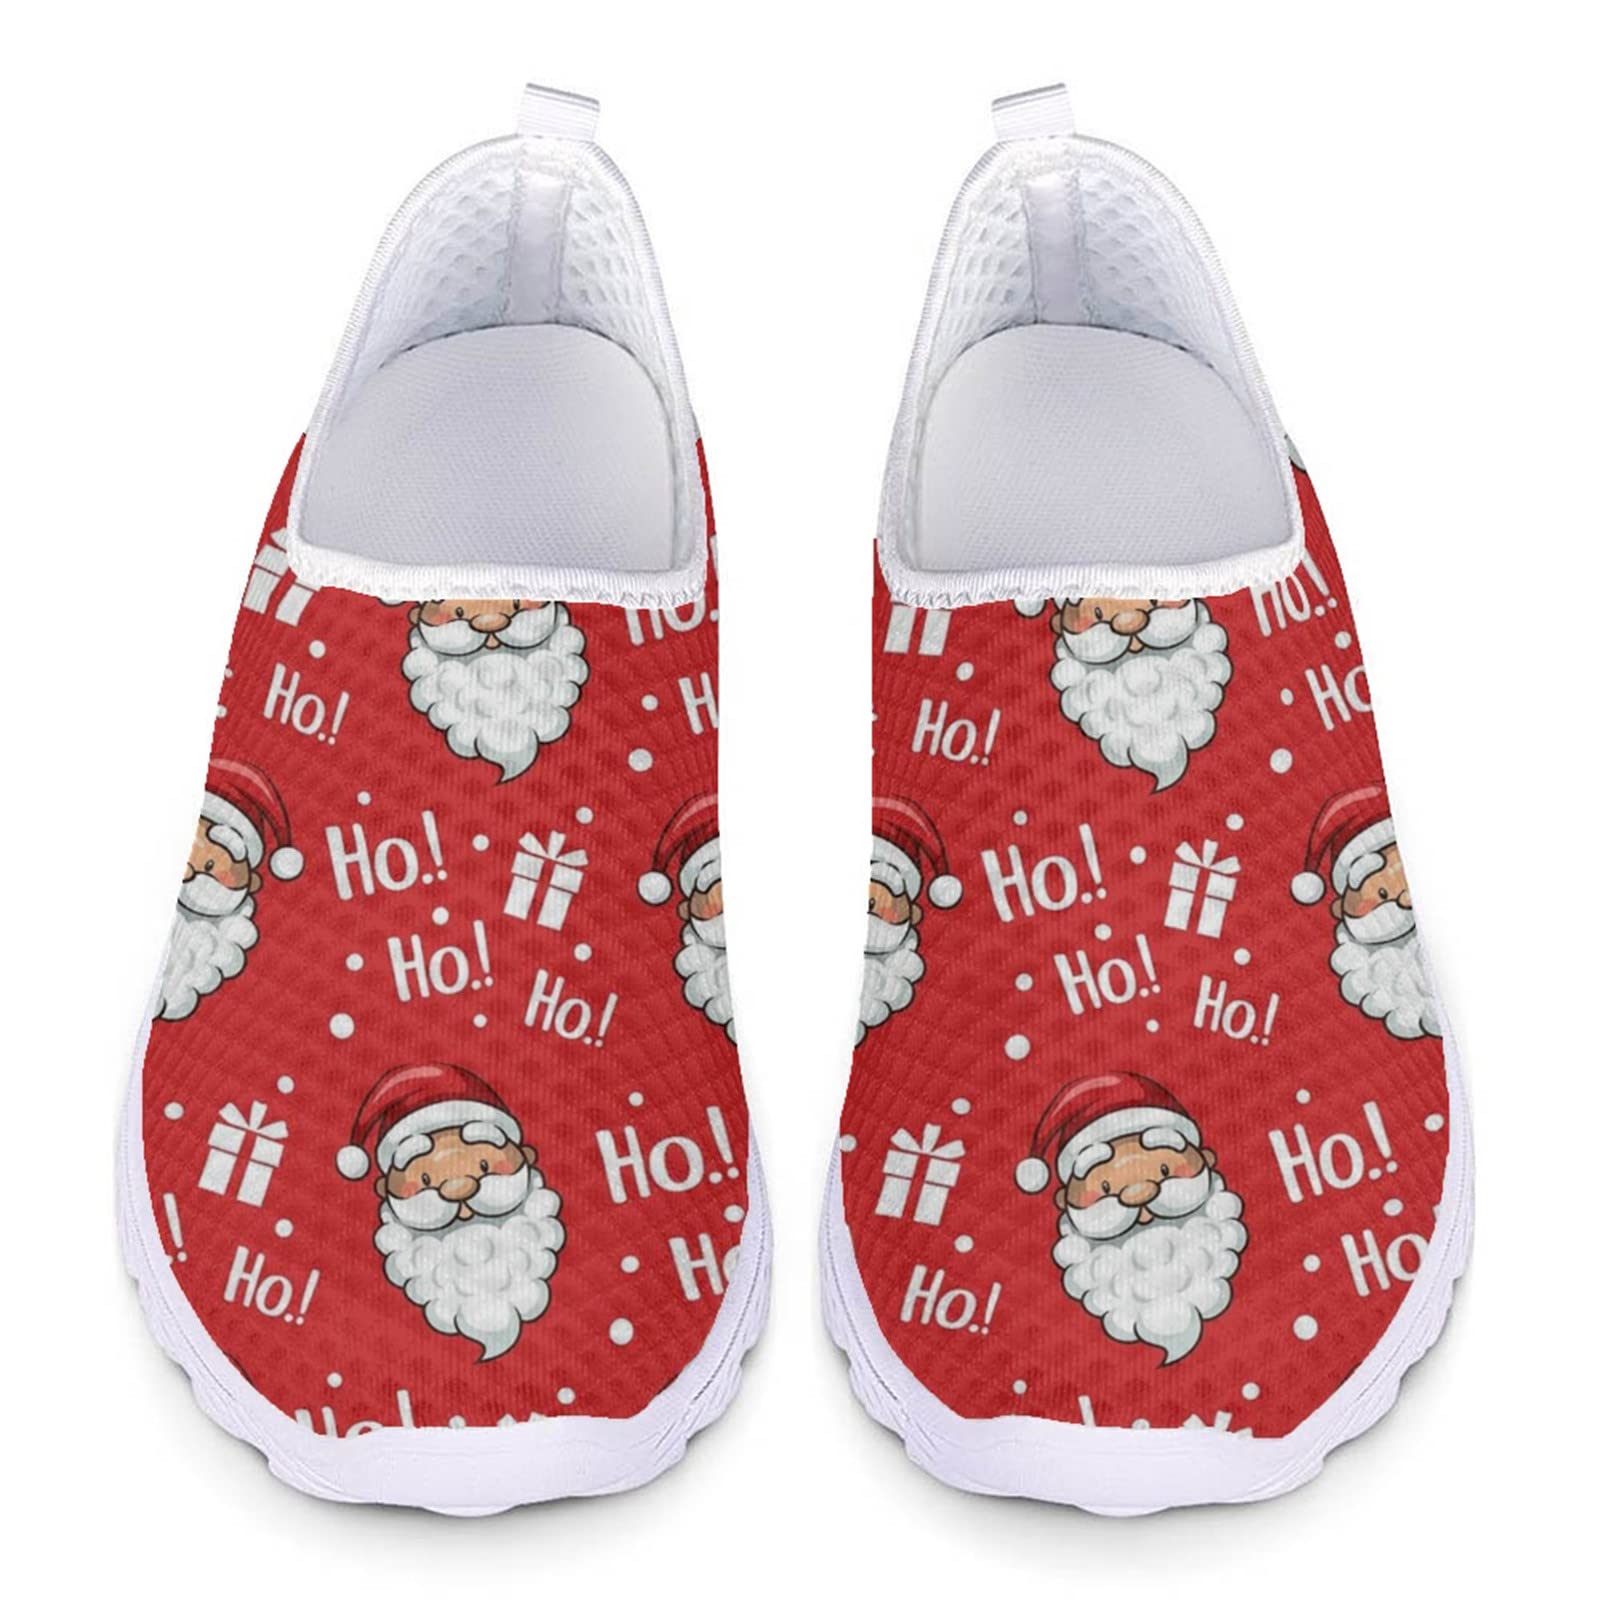 HUIACONG Christmas Shoes Weihnachtsschuhe Rot Damen Slip On Turnschuhe Santa Claus Mesh Laufschuhe Atmungsaktiv Sportschuhe Wanderschuhe Leichte Bequeme Schuhe 36 EU